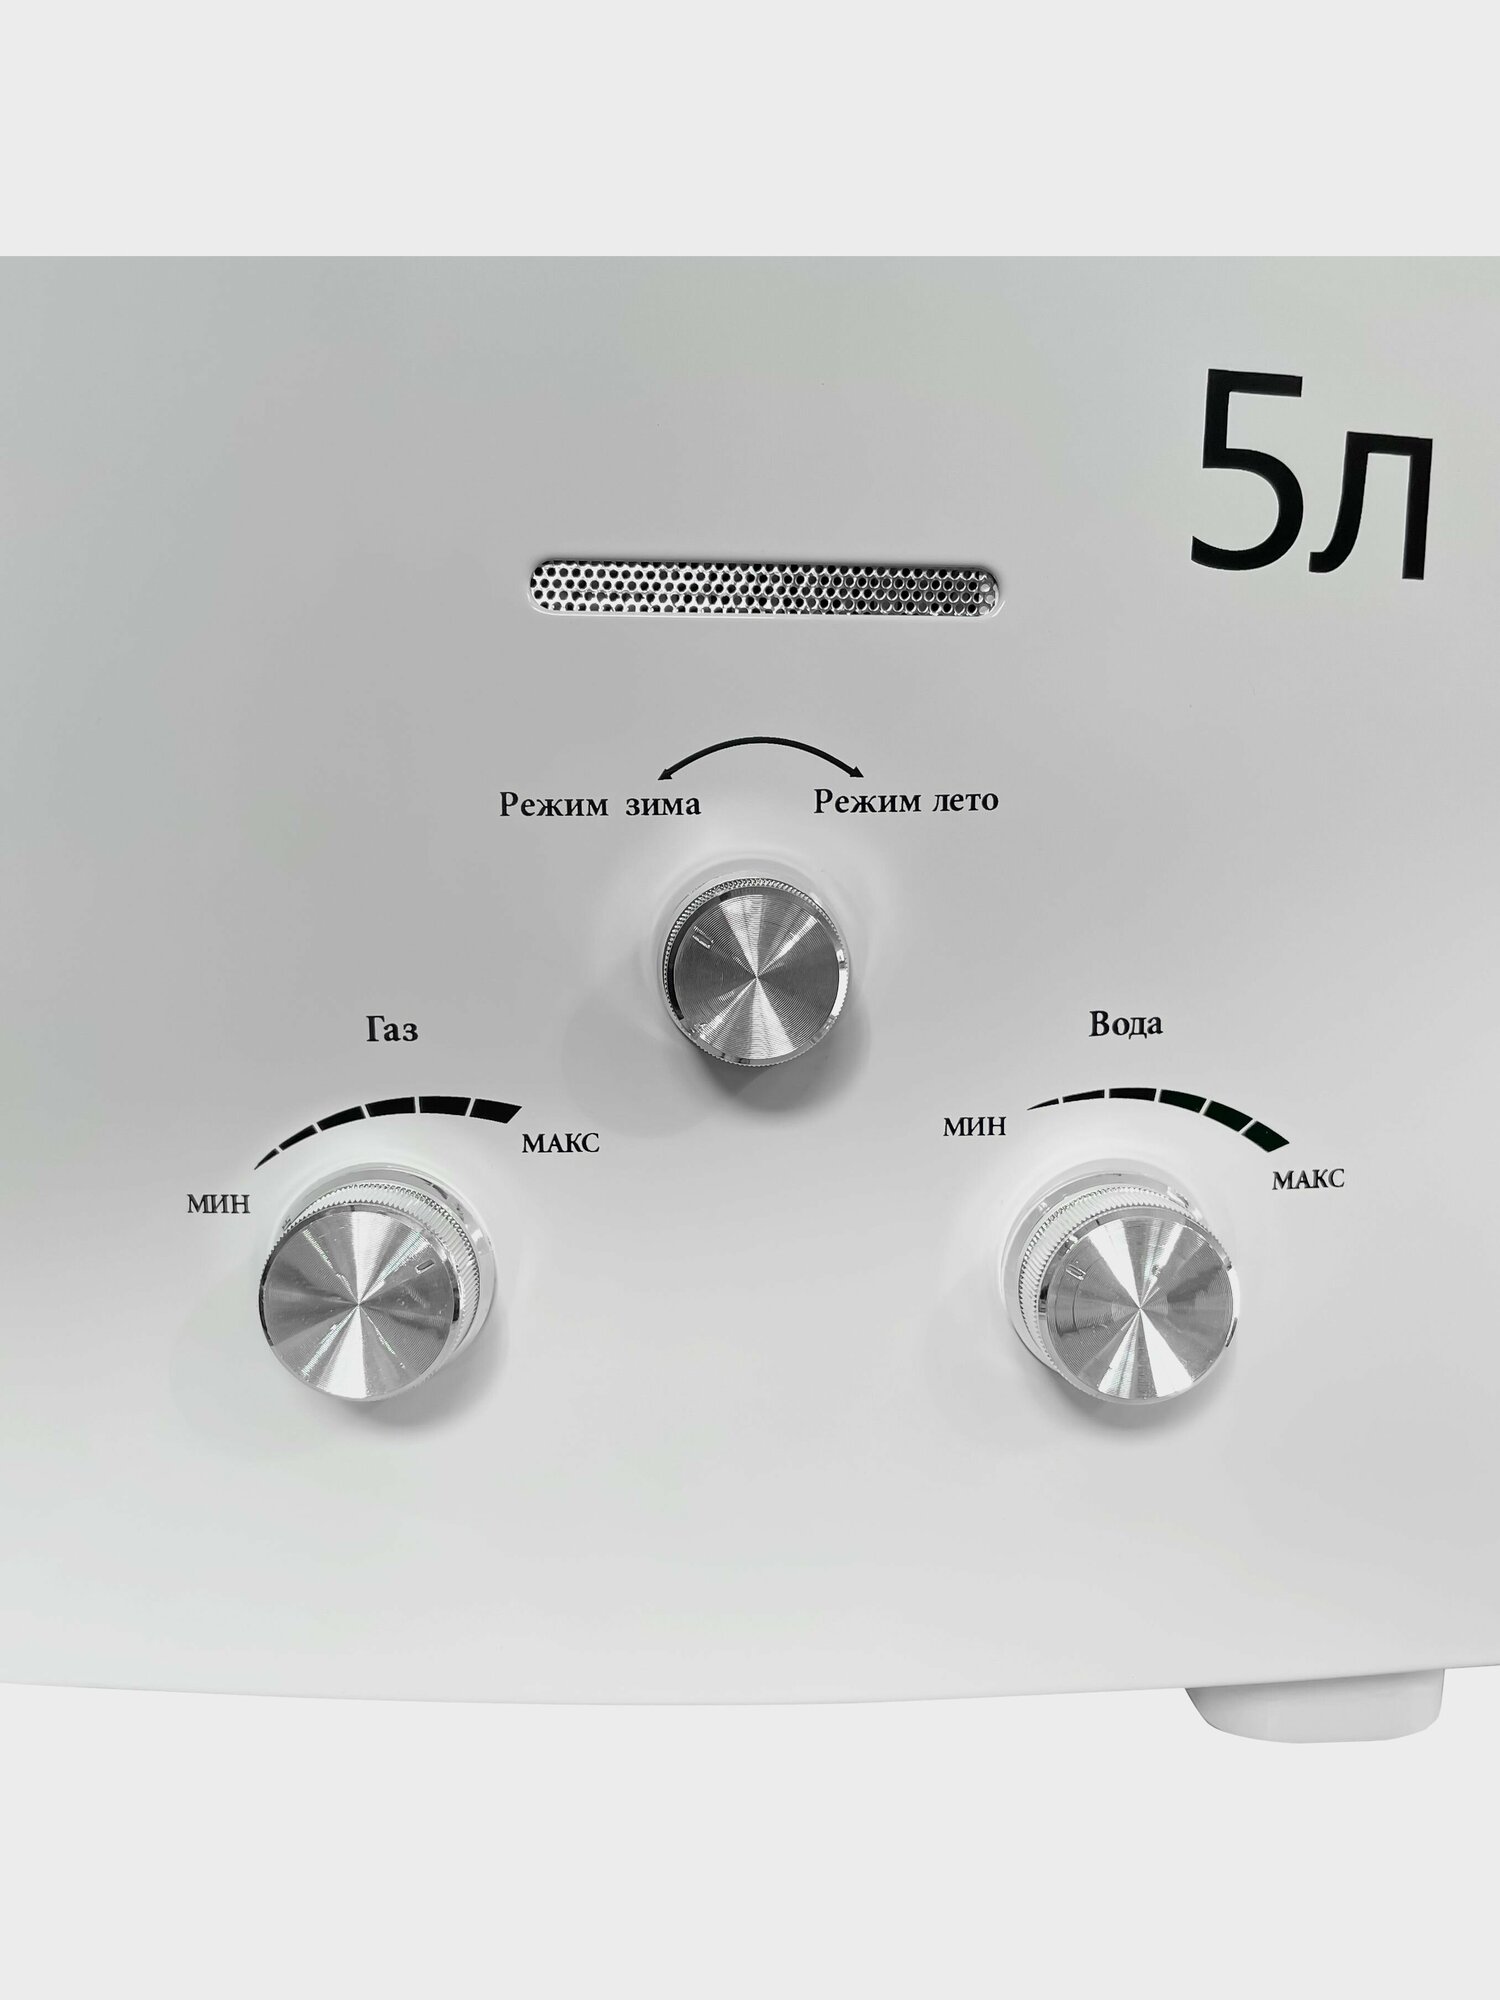 Газовый водонагреватель "Умница" модель ГК-5л/мин, бездымоходная, белый цвет панели - фотография № 3